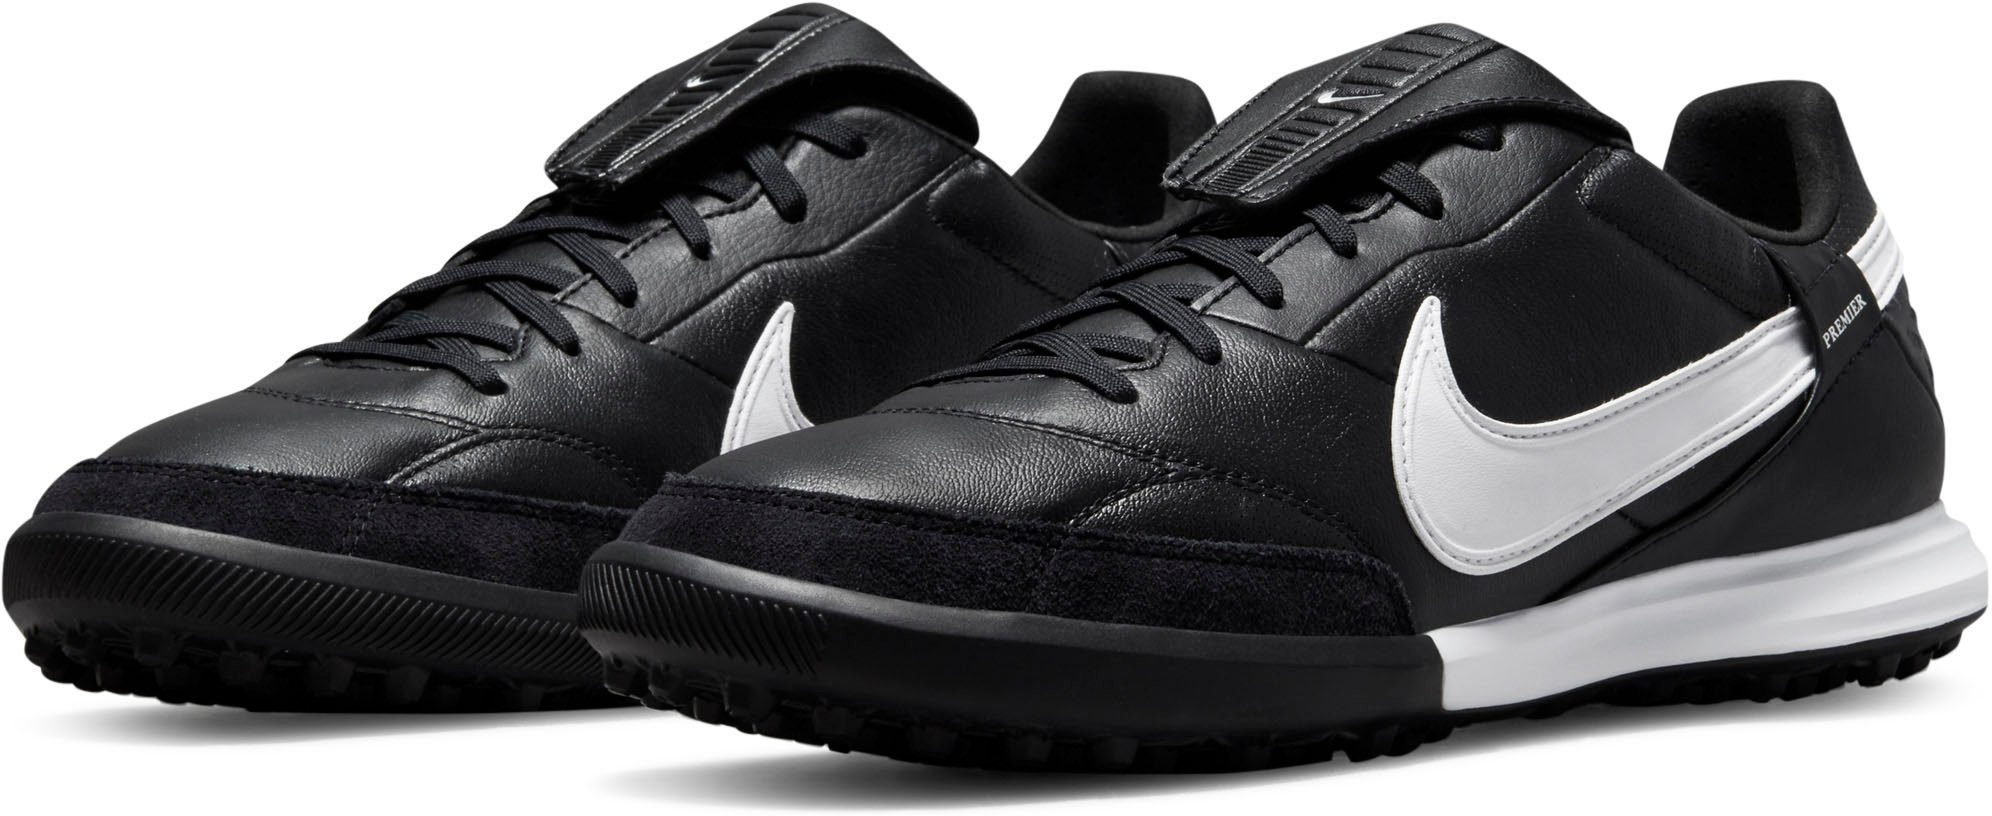 Nike »THE PREMIER III TF ARTIFICIAL-TURF« Fußballschuh online kaufen | OTTO